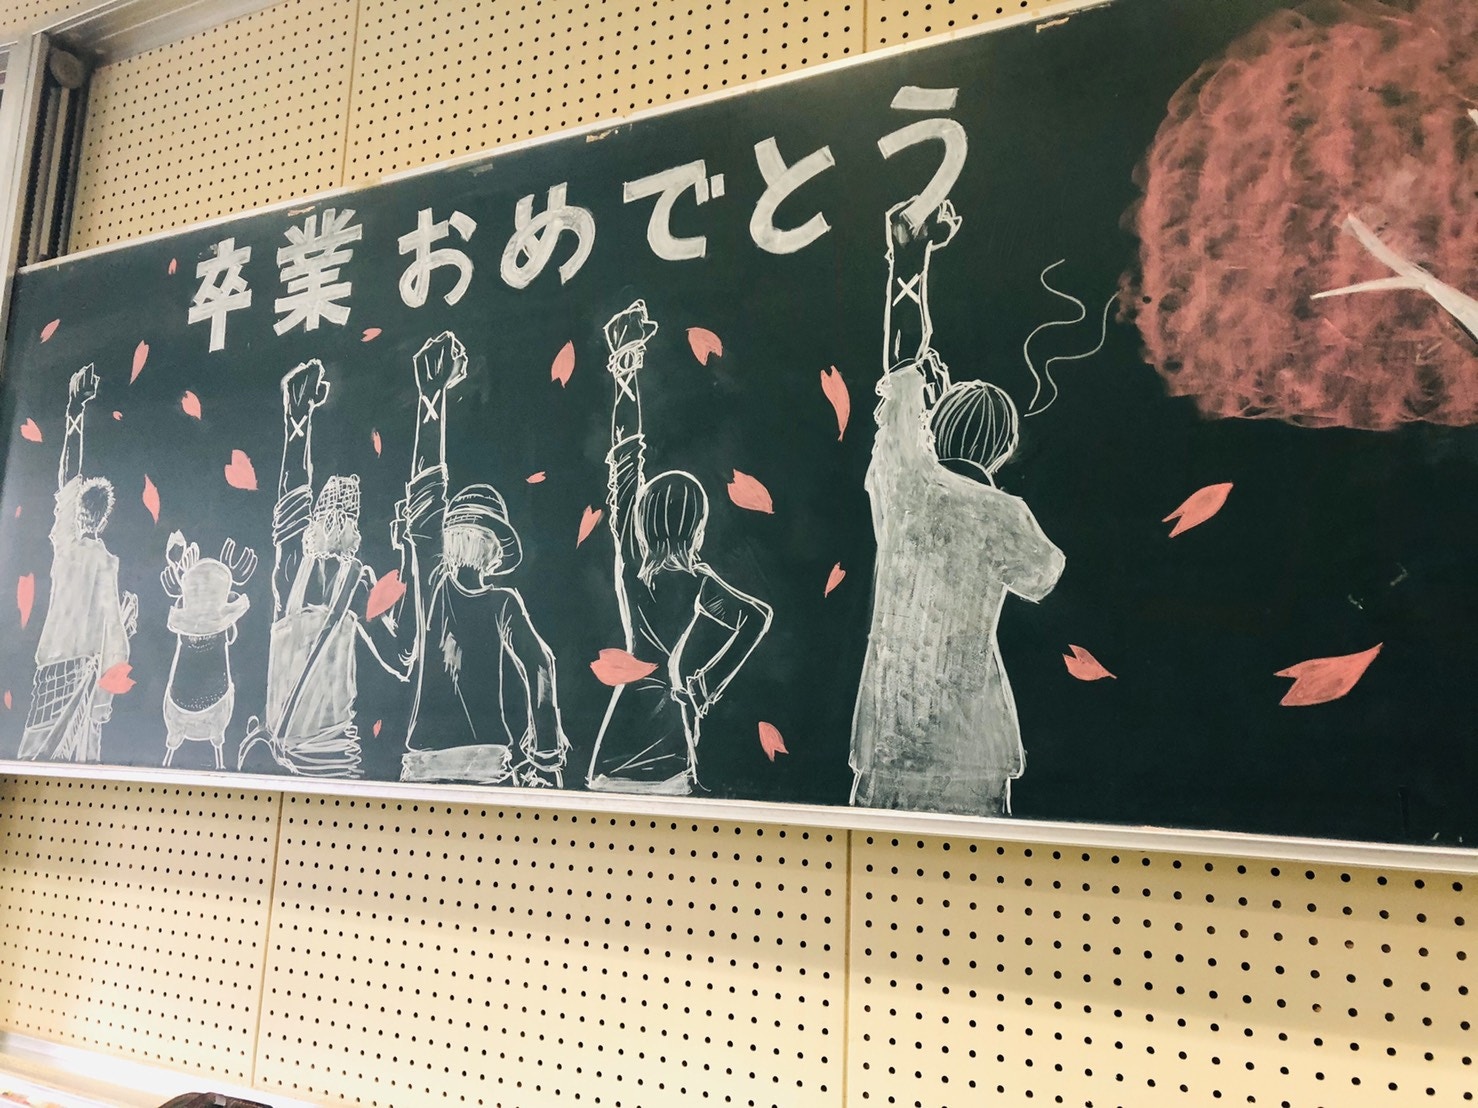 日本黑板报 - 高清图片，堆糖，美图壁纸兴趣社区